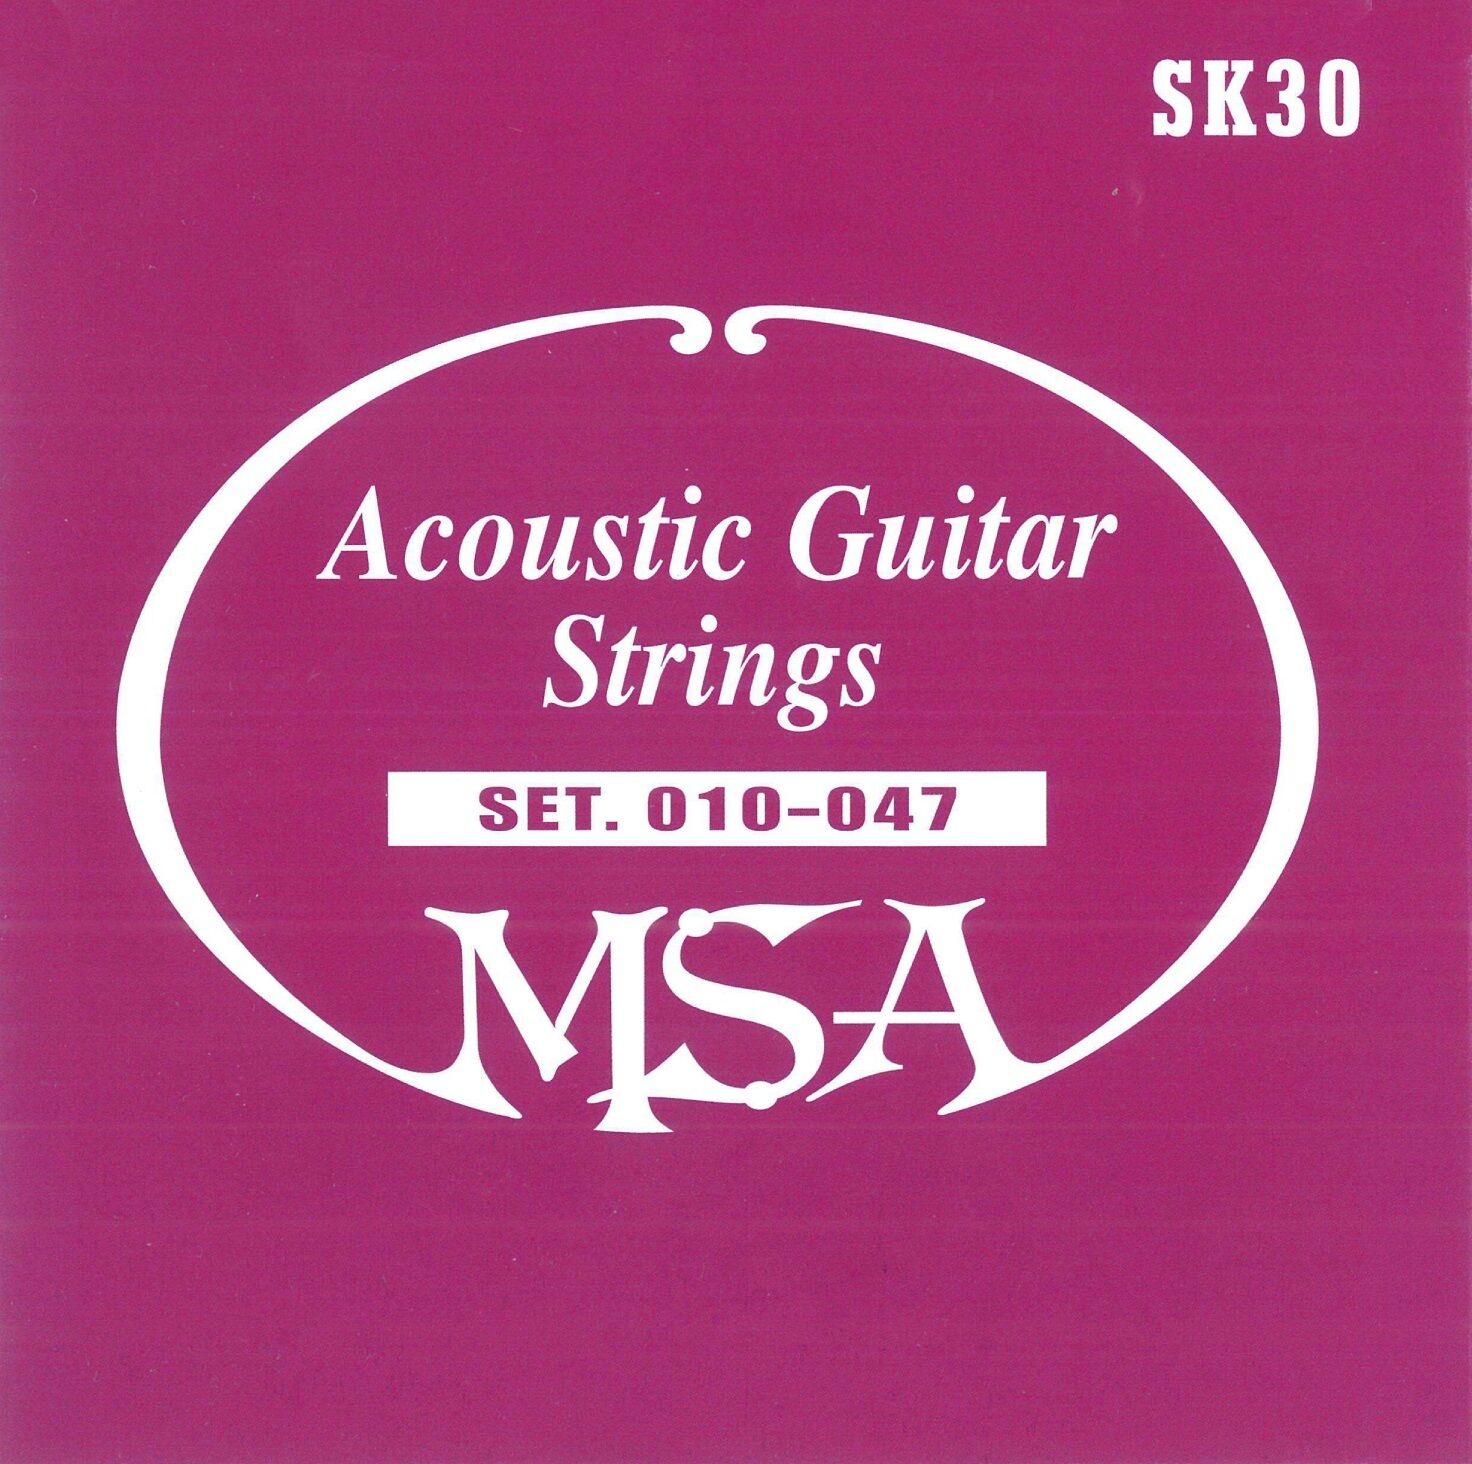 Kytarové ocelové struny - MSA SK30 - síla 010-047, 6 kusů